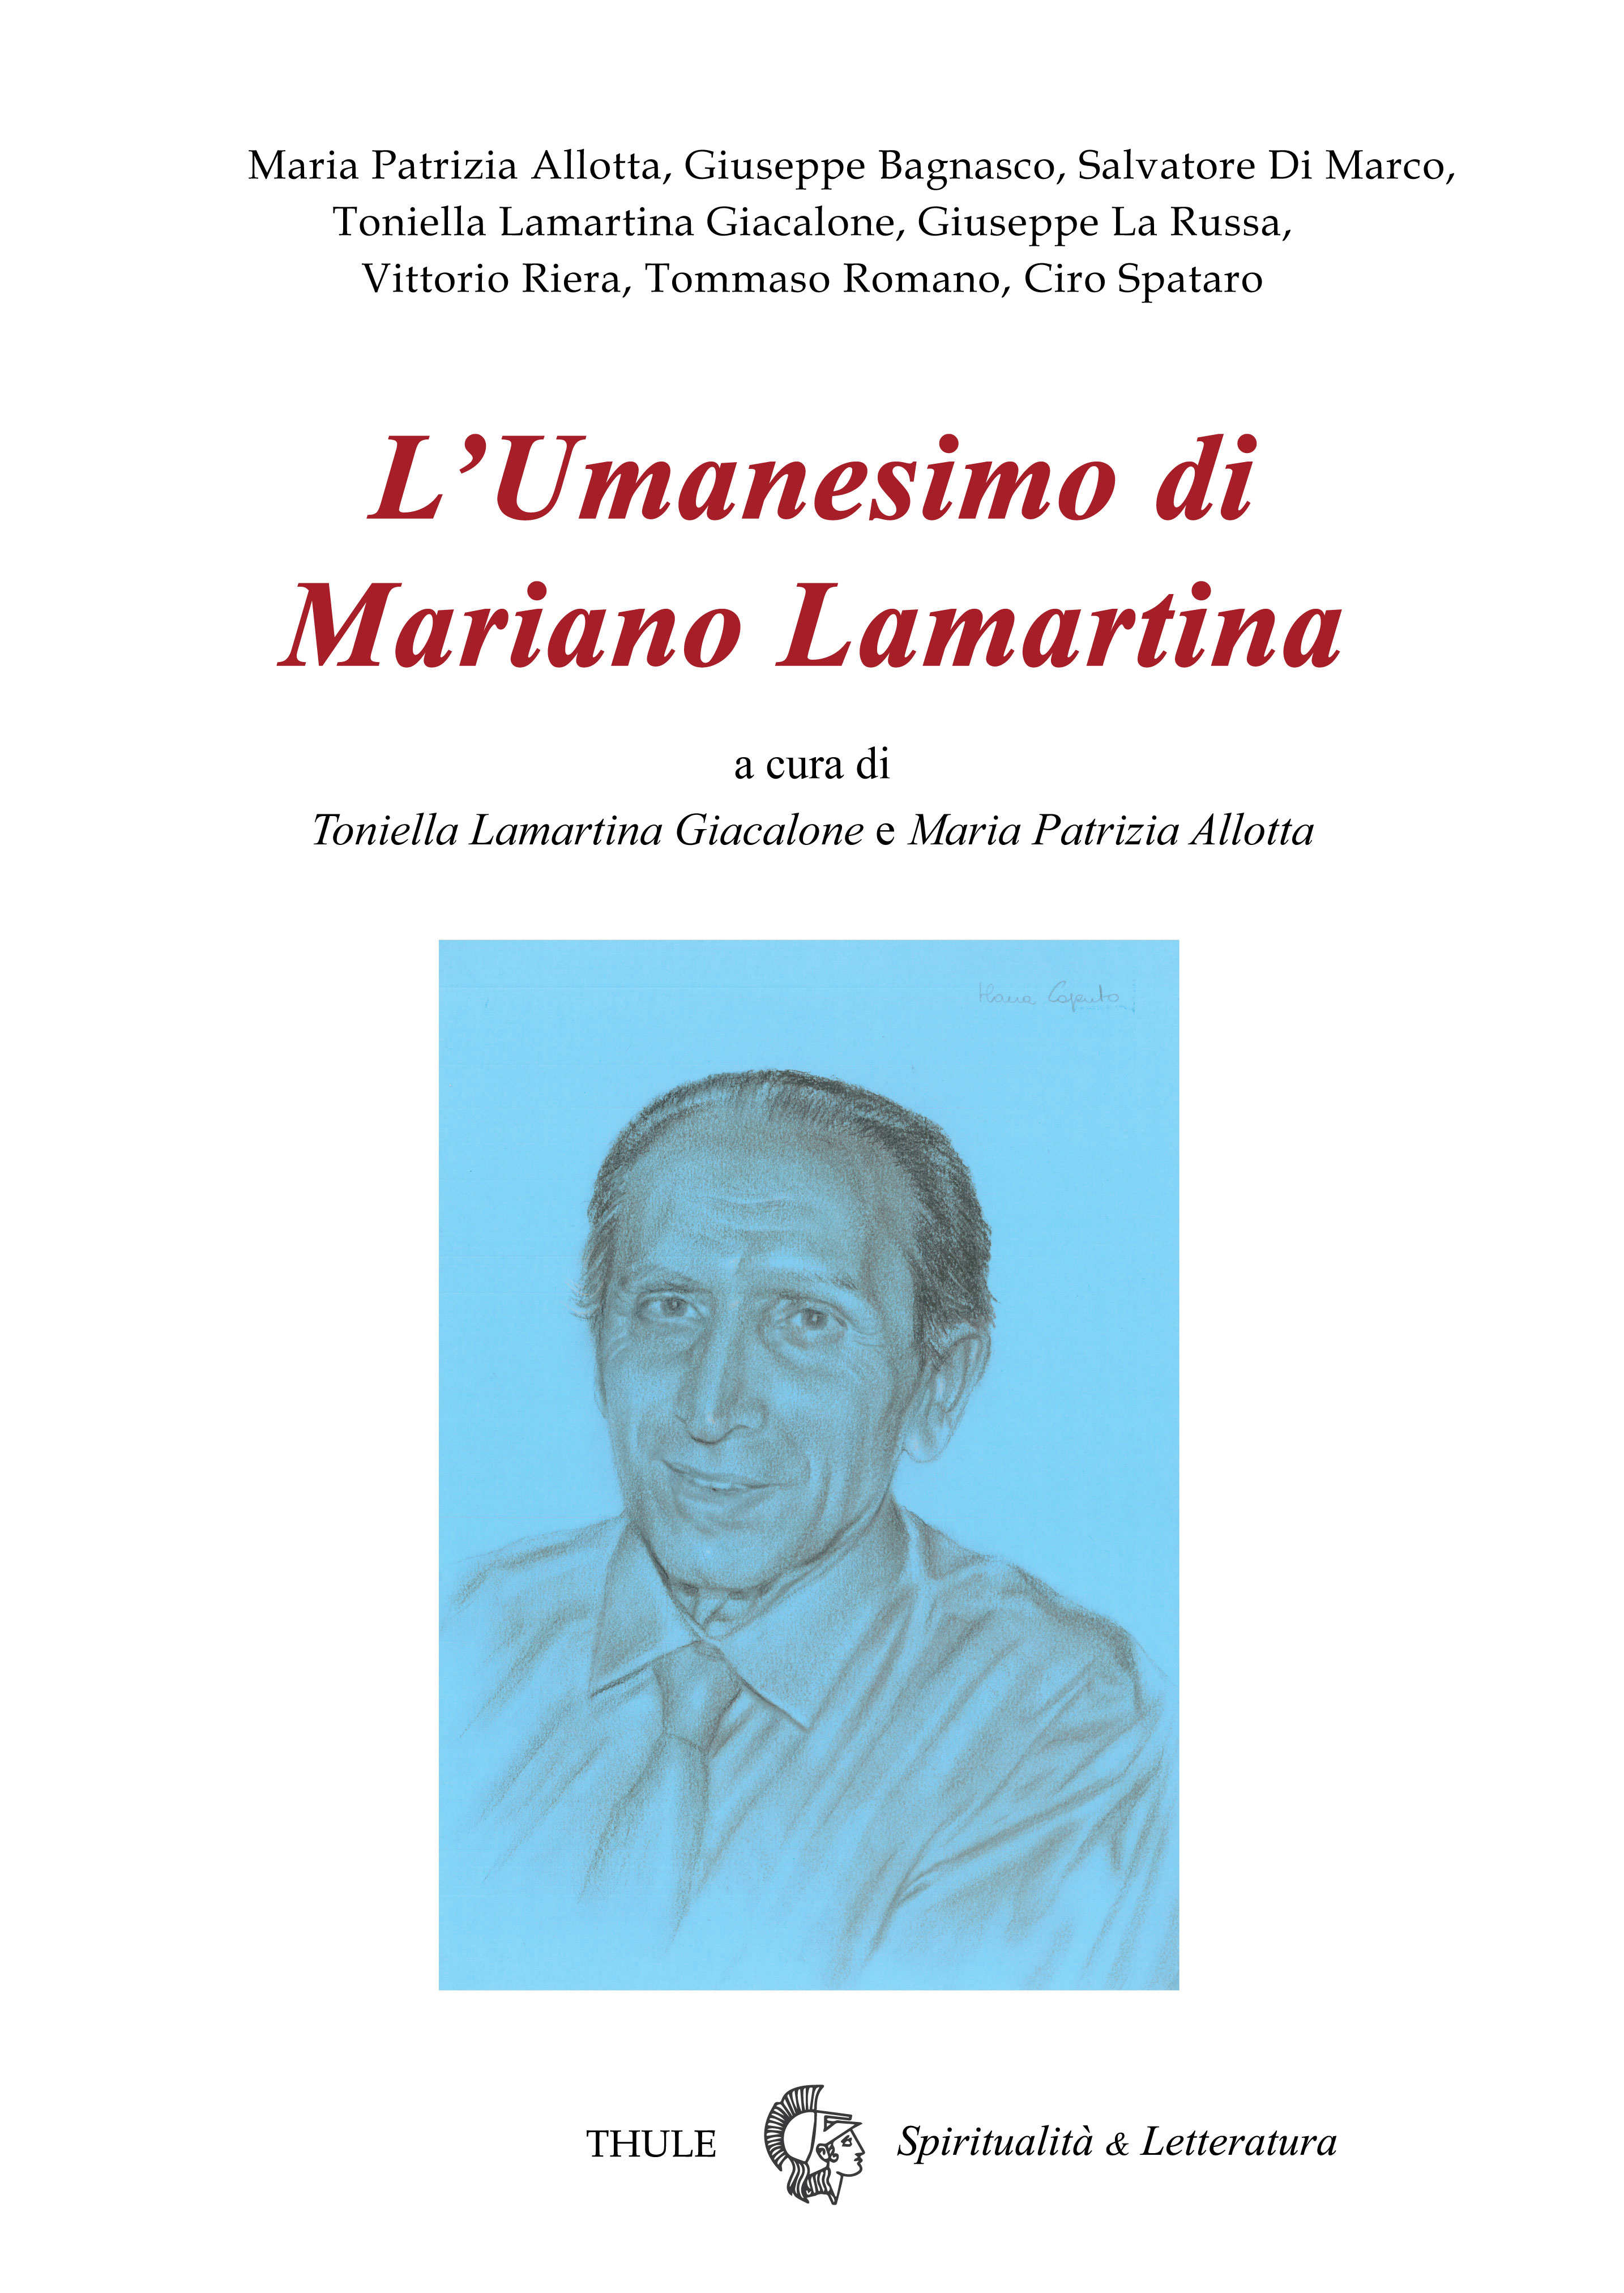 Pubblichiamo il nuovo numero monografico della rivista "Spiritualità & Letteratura" su "Mariamo Lamartina", a cura di Toniella Lamartina Giacalone e Maria Patrizia Allotta